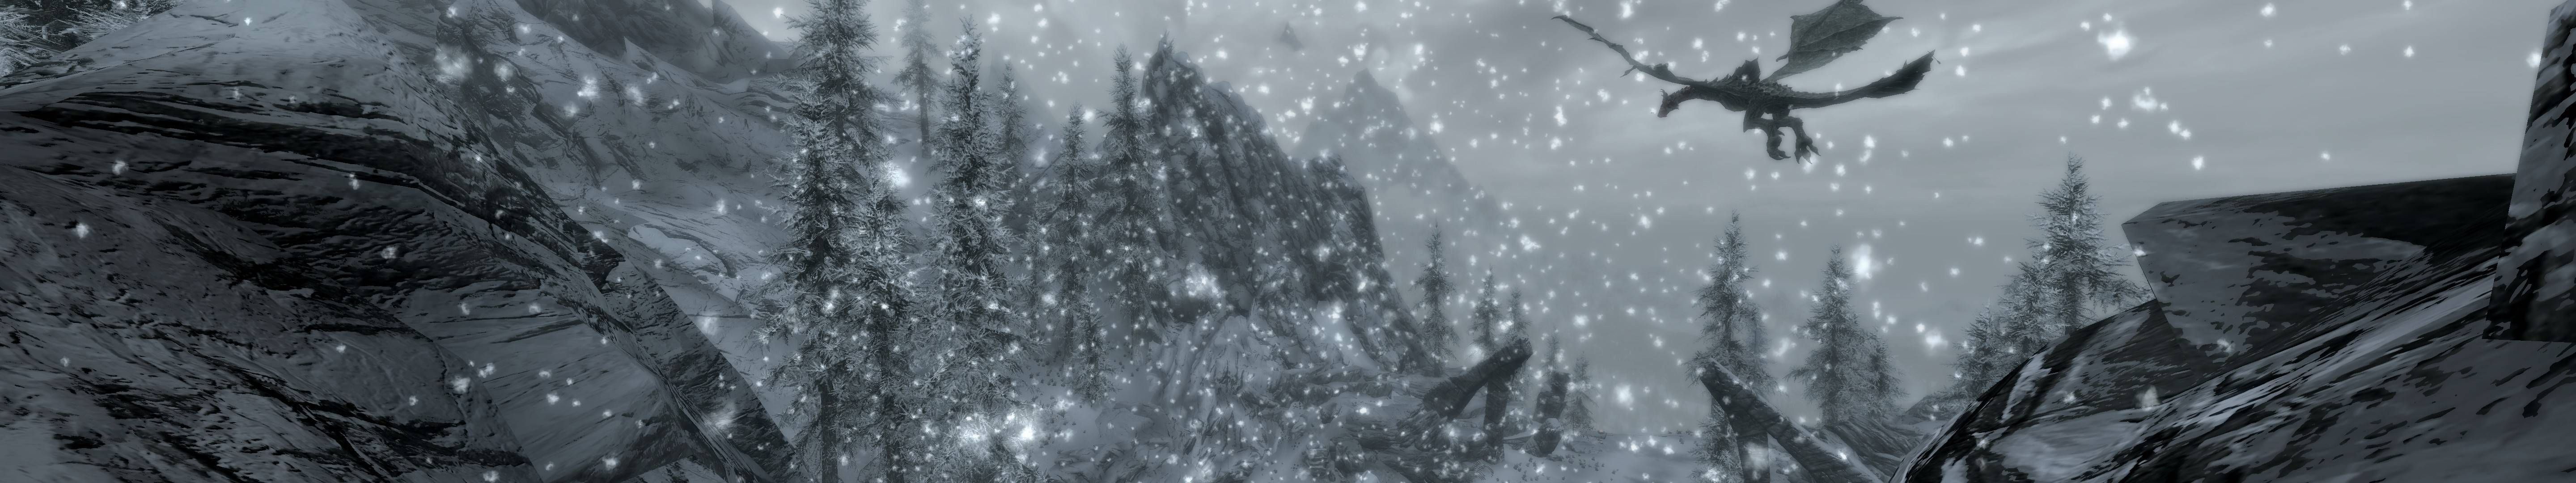 Flying dragon in The Elder Scrolls V: Skyrim desktop wallpaper 396